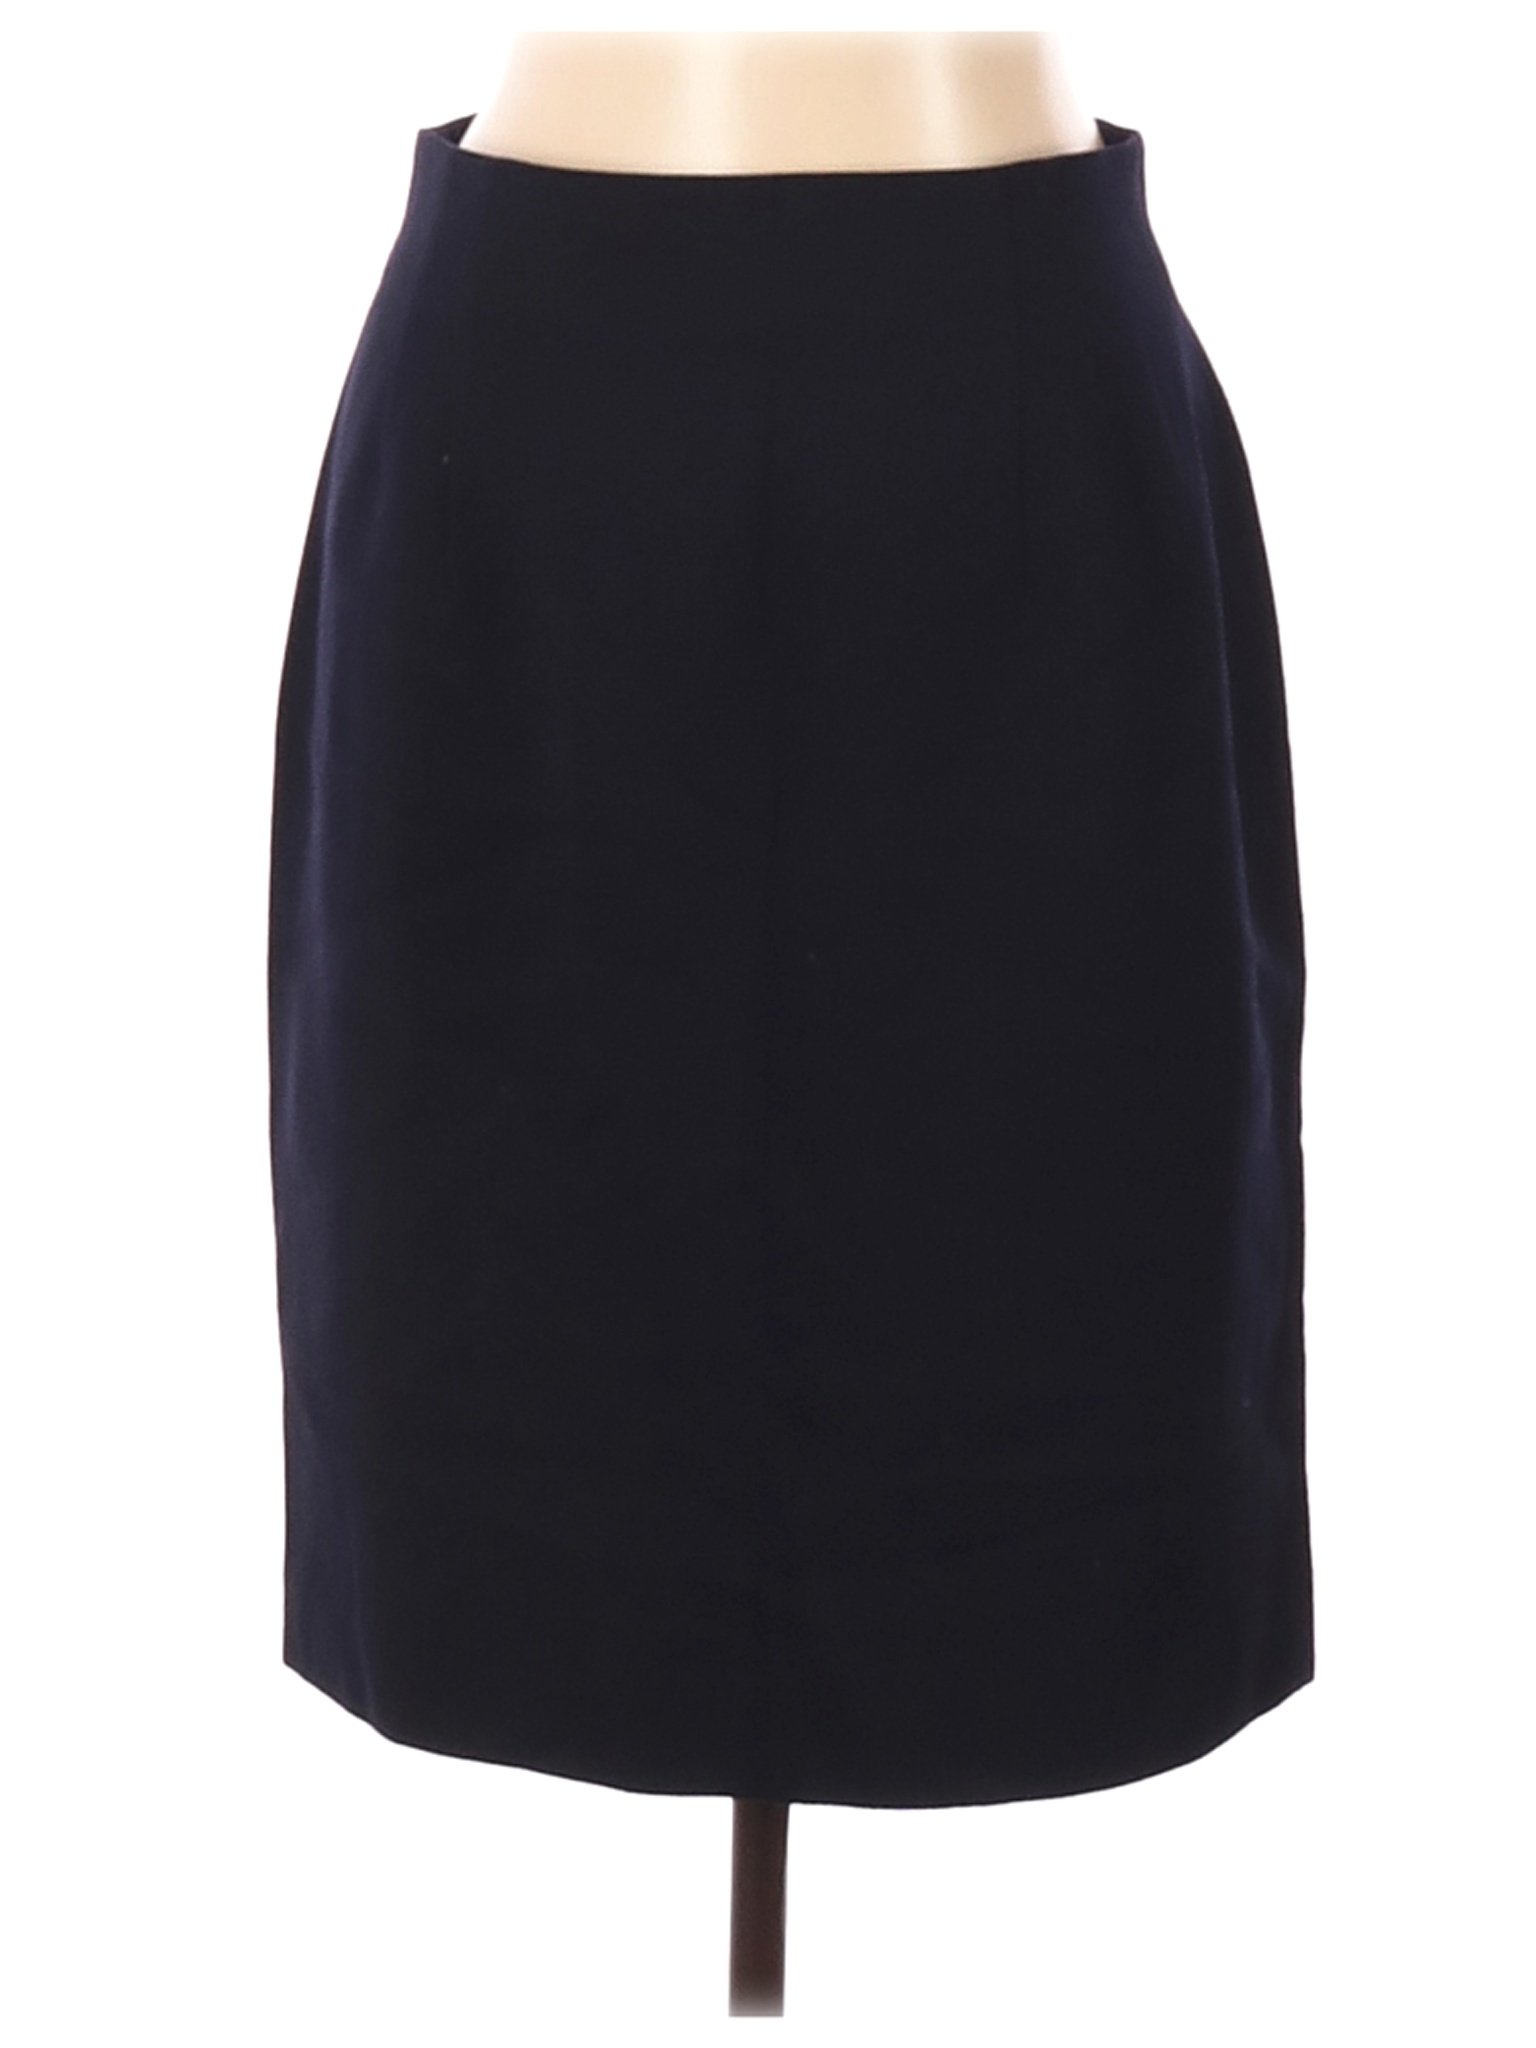 Jones New York Women Black Wool Skirt 12 | eBay